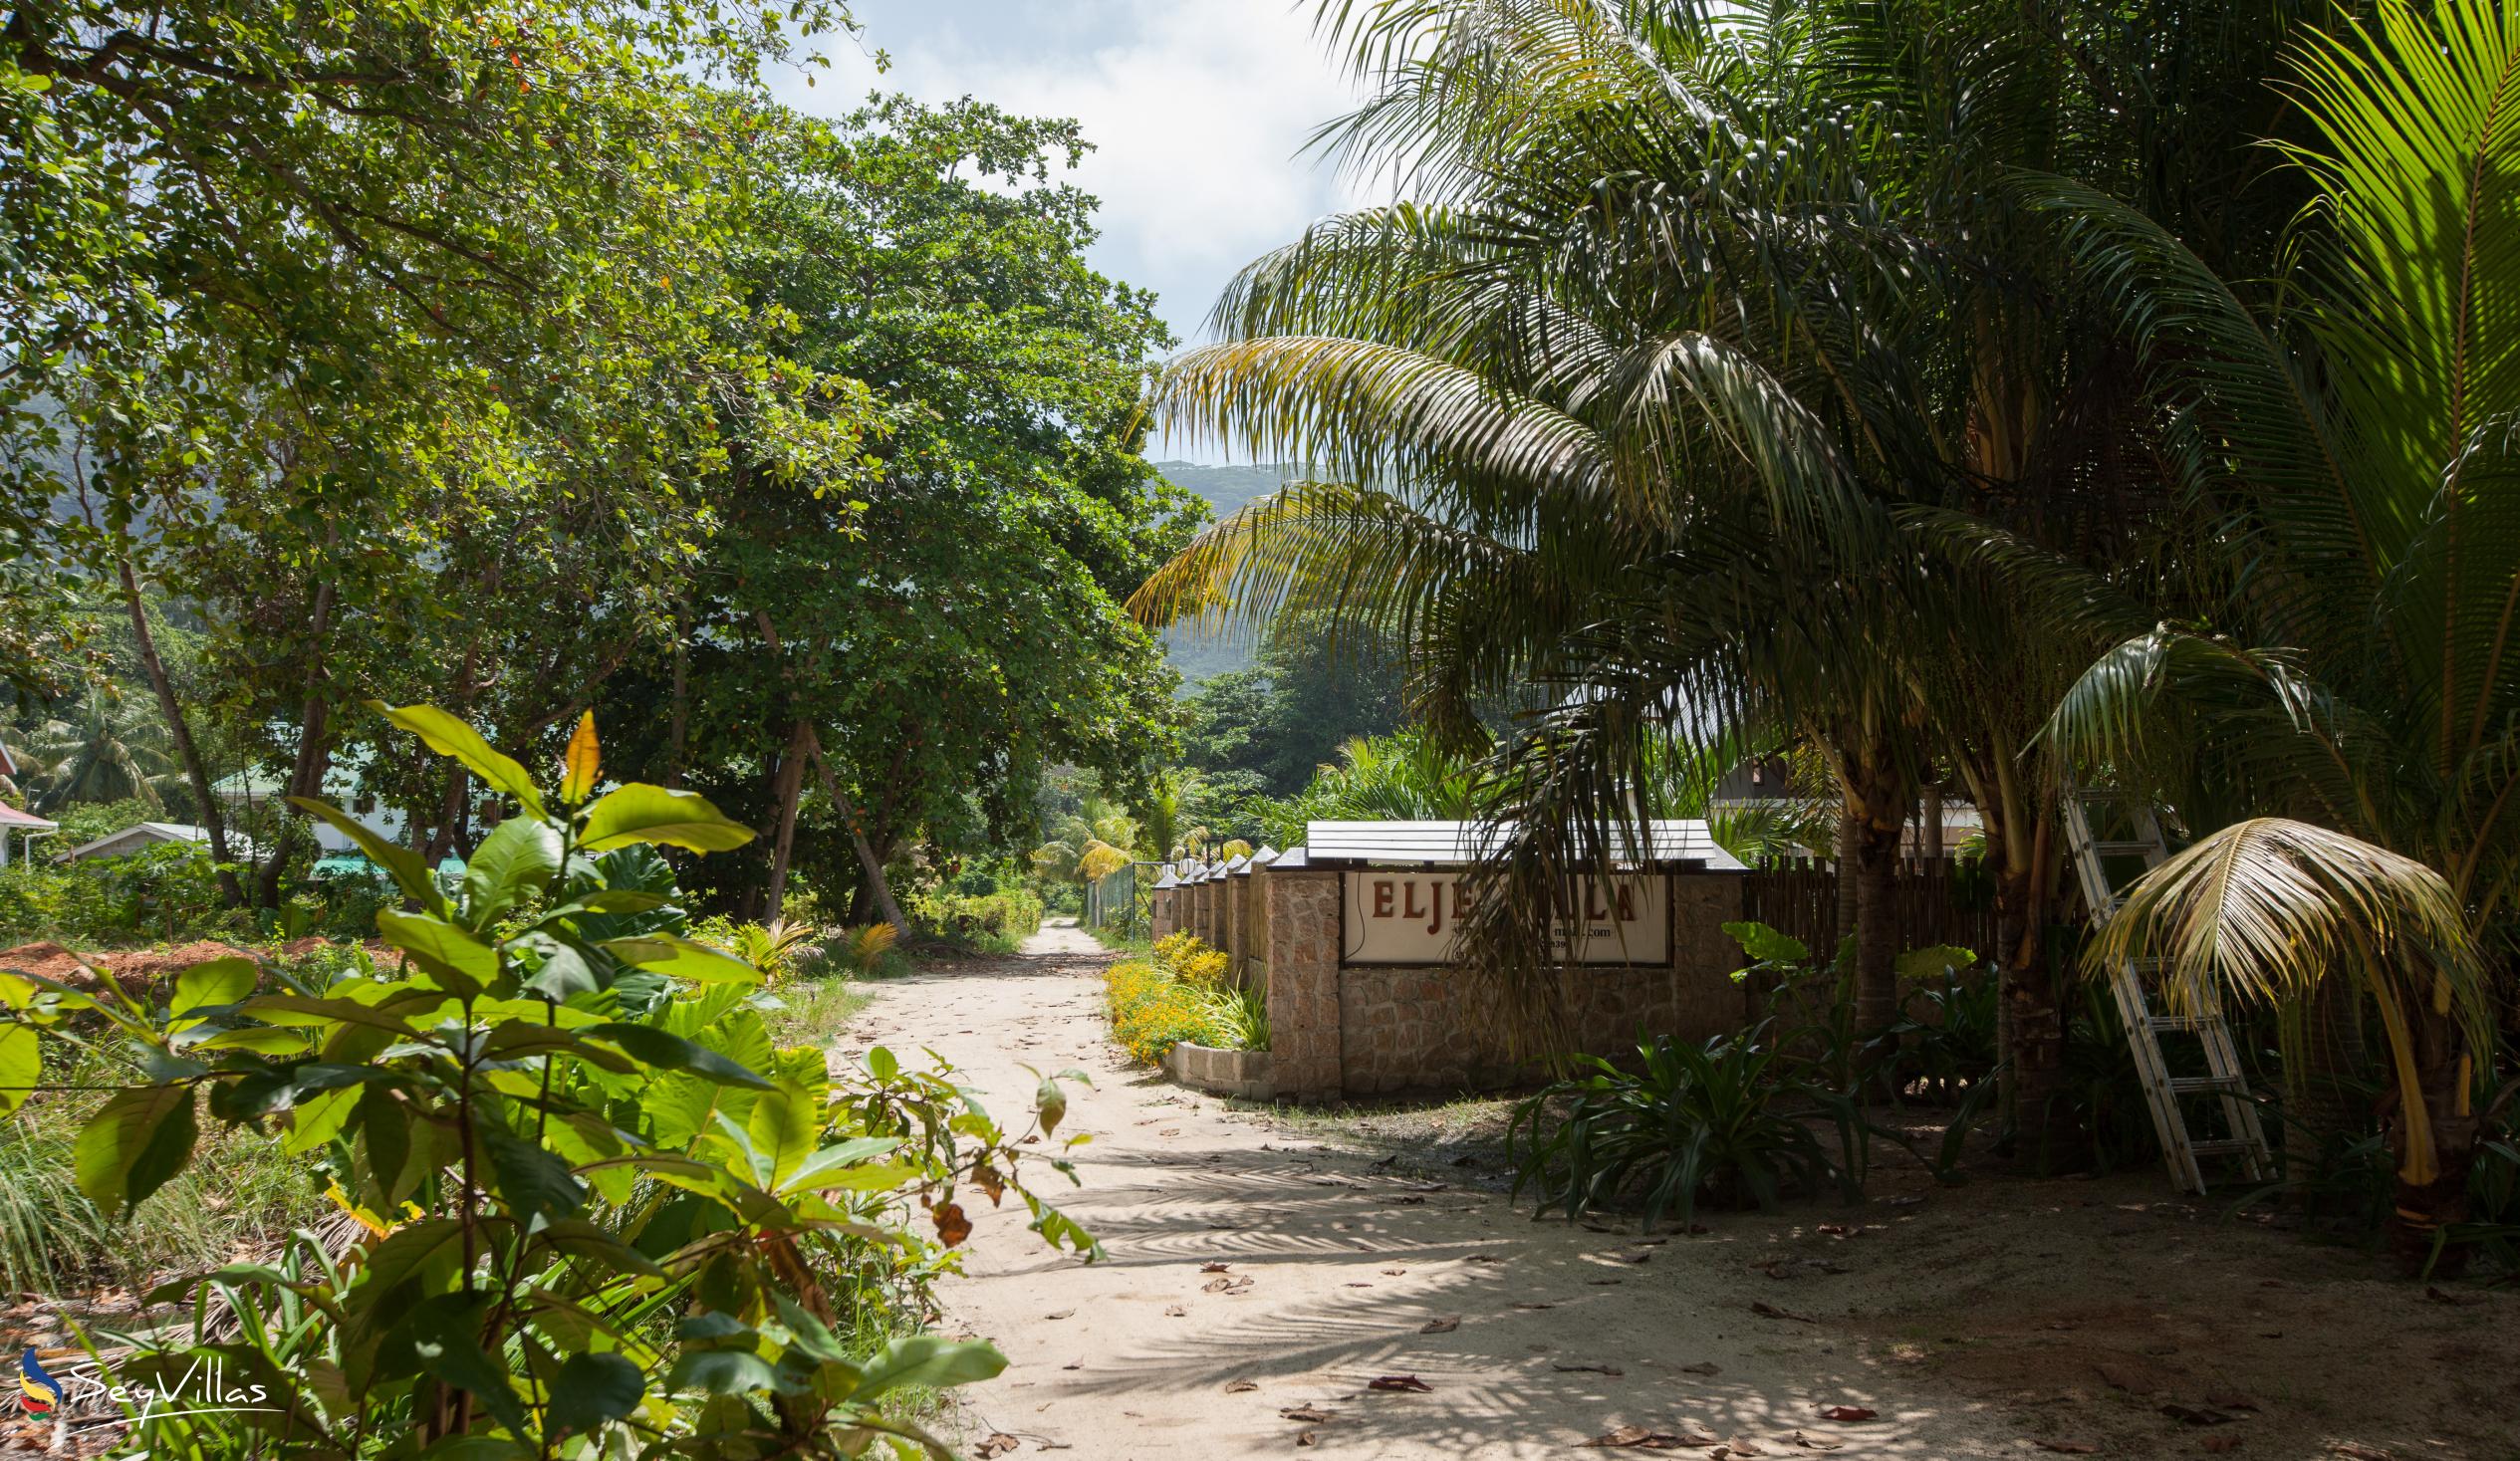 Photo 18: Elje Villa - Outdoor area - La Digue (Seychelles)